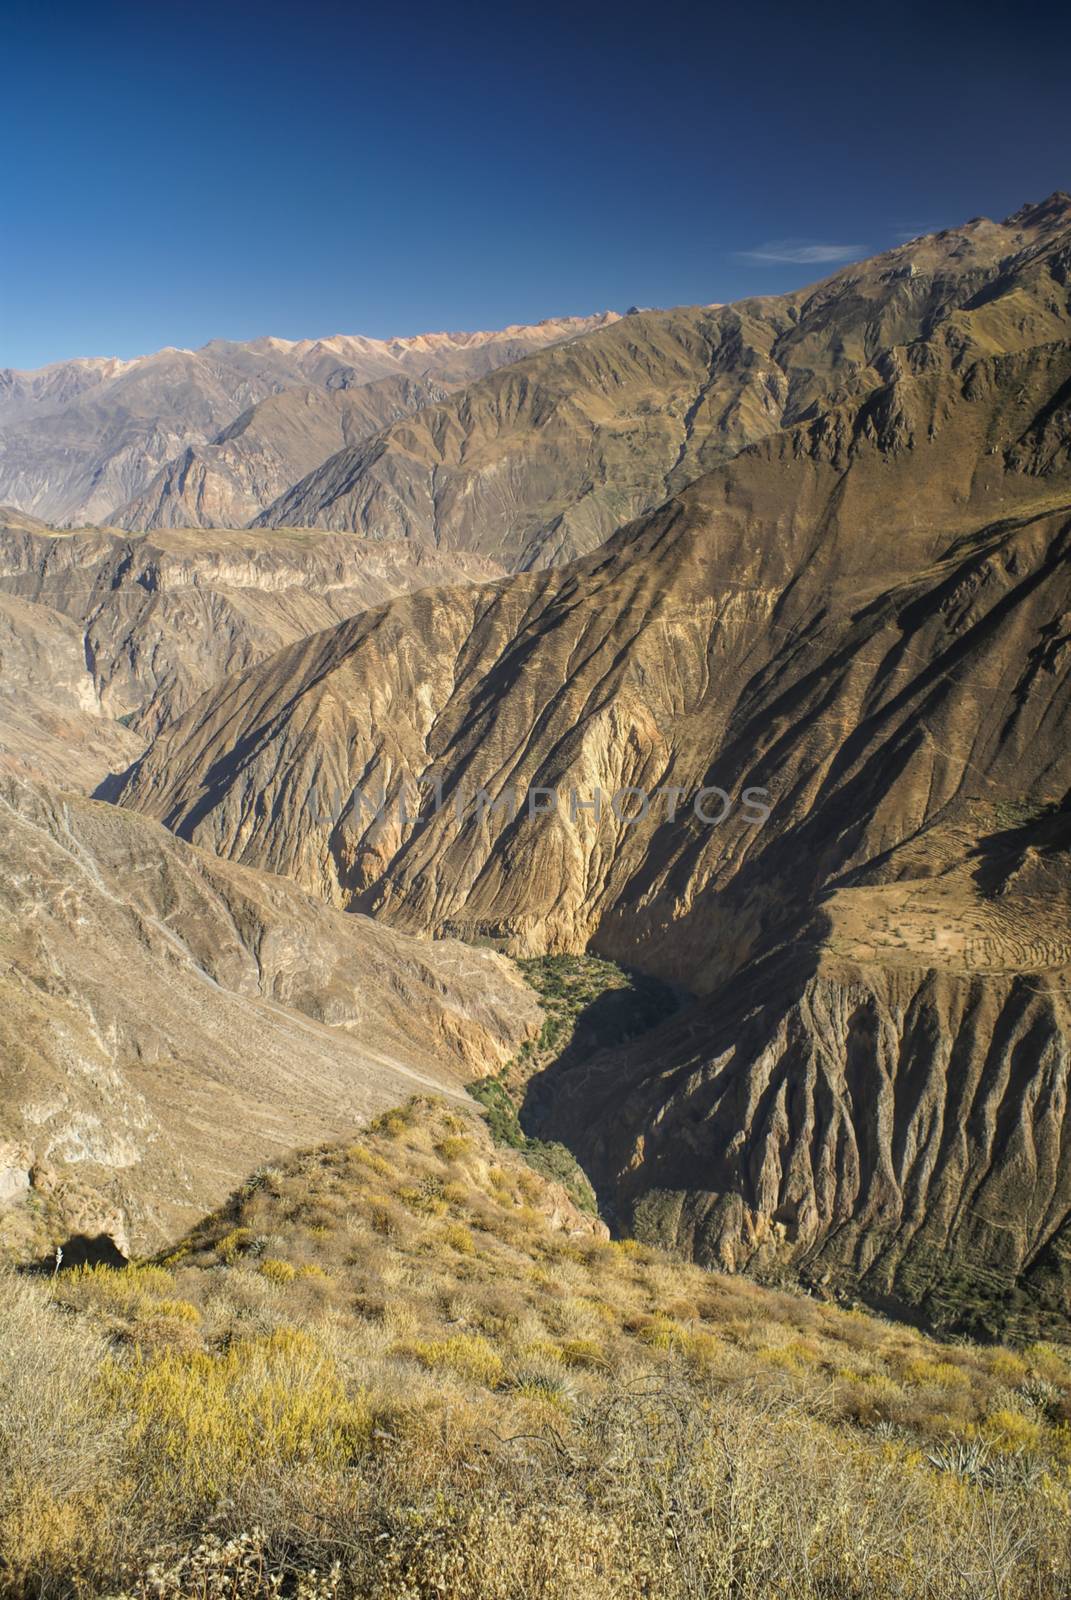 Arid landscape around Canon del Colca, famous tourist destination in Peru